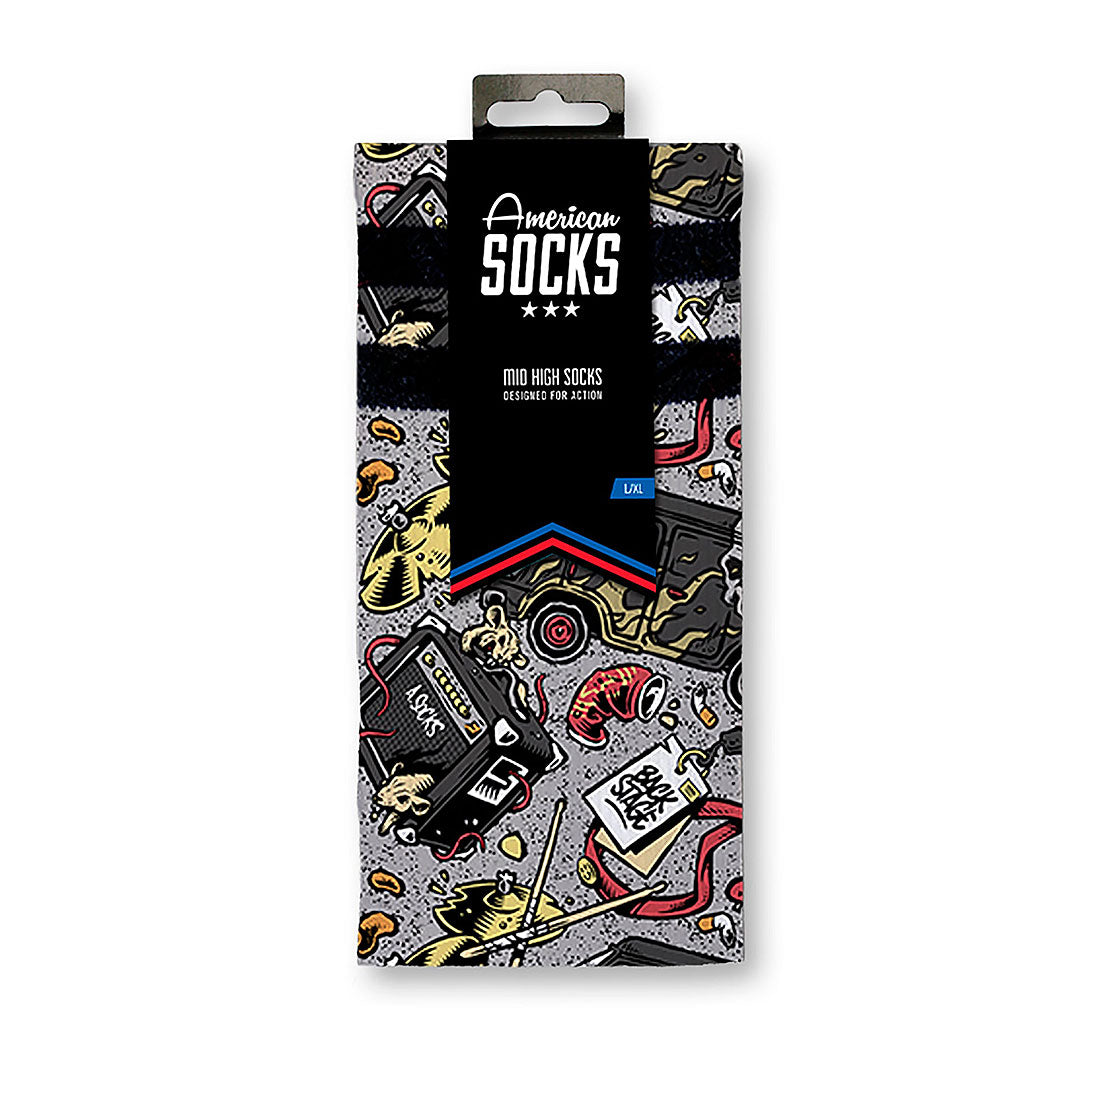 American Socks Signature - Backstage Apparel Socks